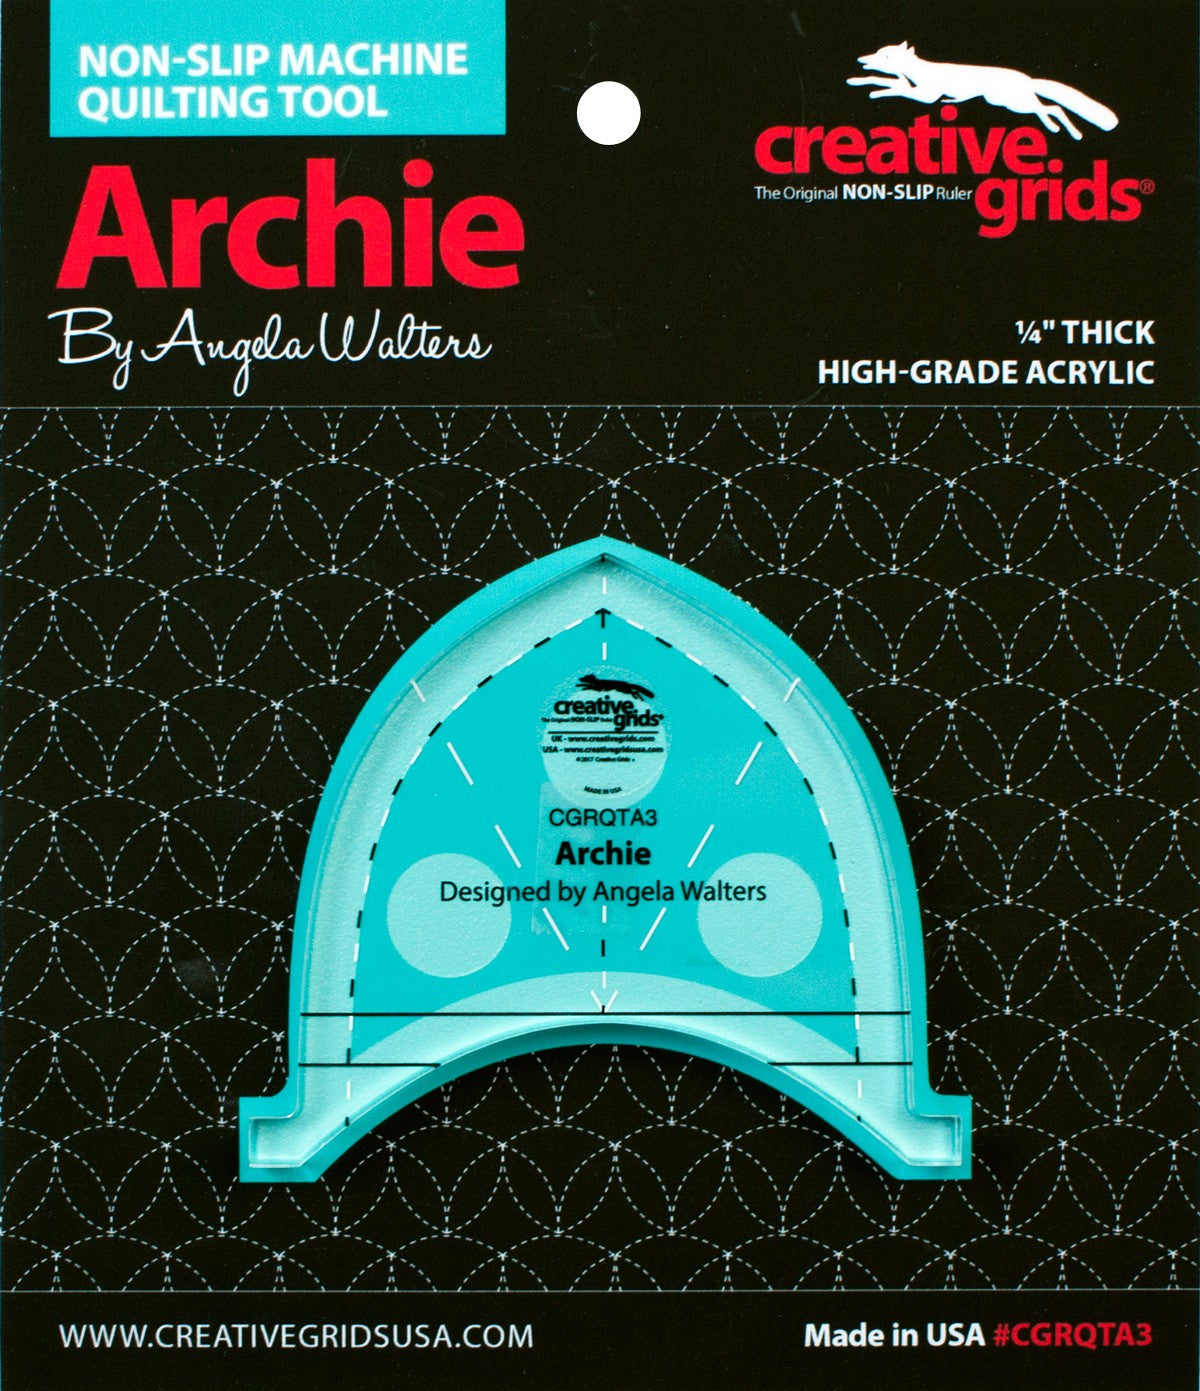 Creative Grids Machine Quilting Tool - Archie (CGRQTA3)